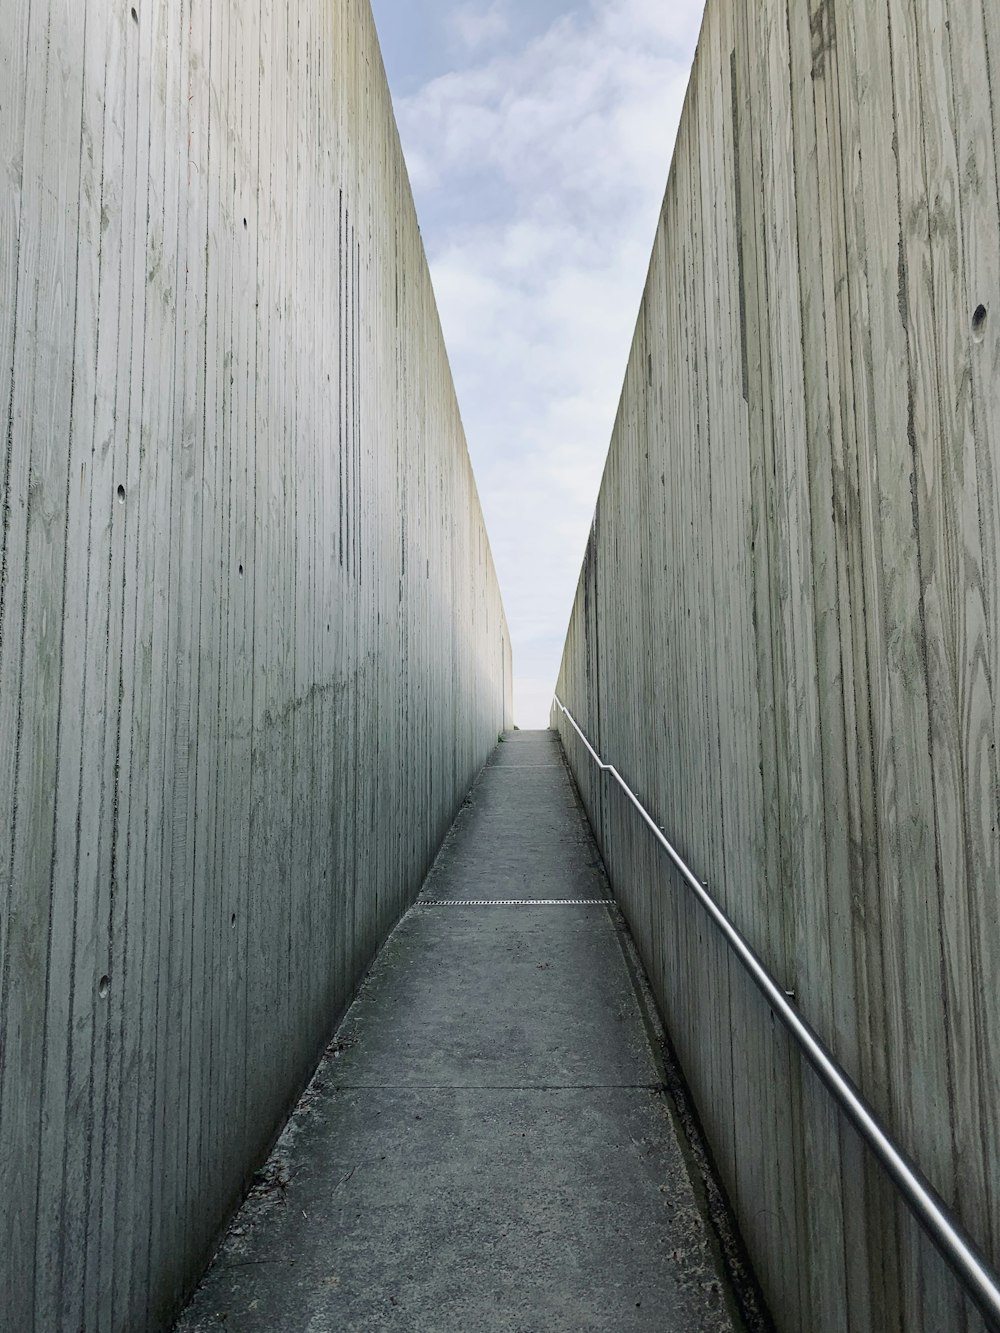 a long narrow walkway between two concrete walls